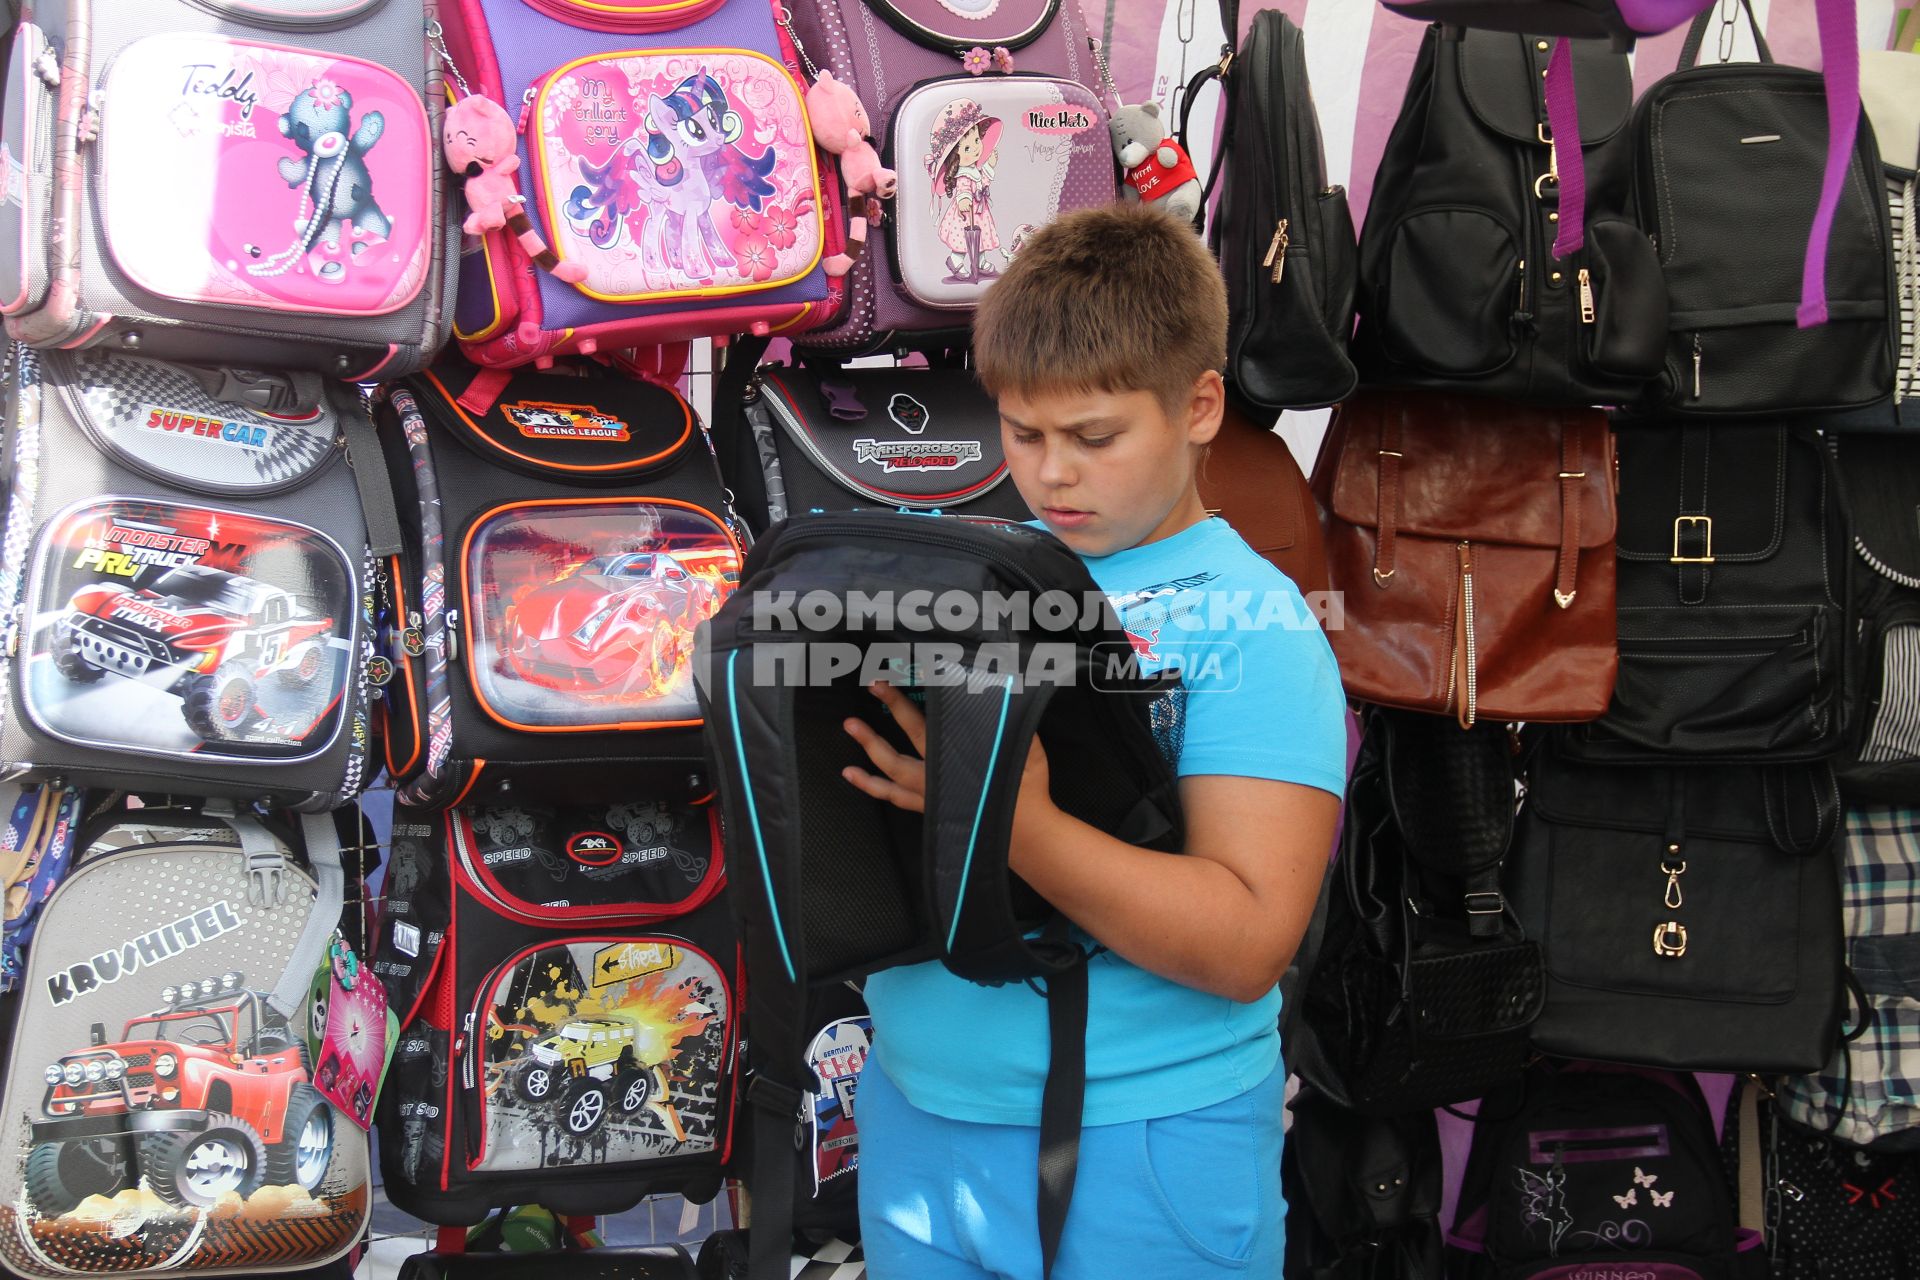 Нижний Новгород. Мальчик выбирает рюкзак.